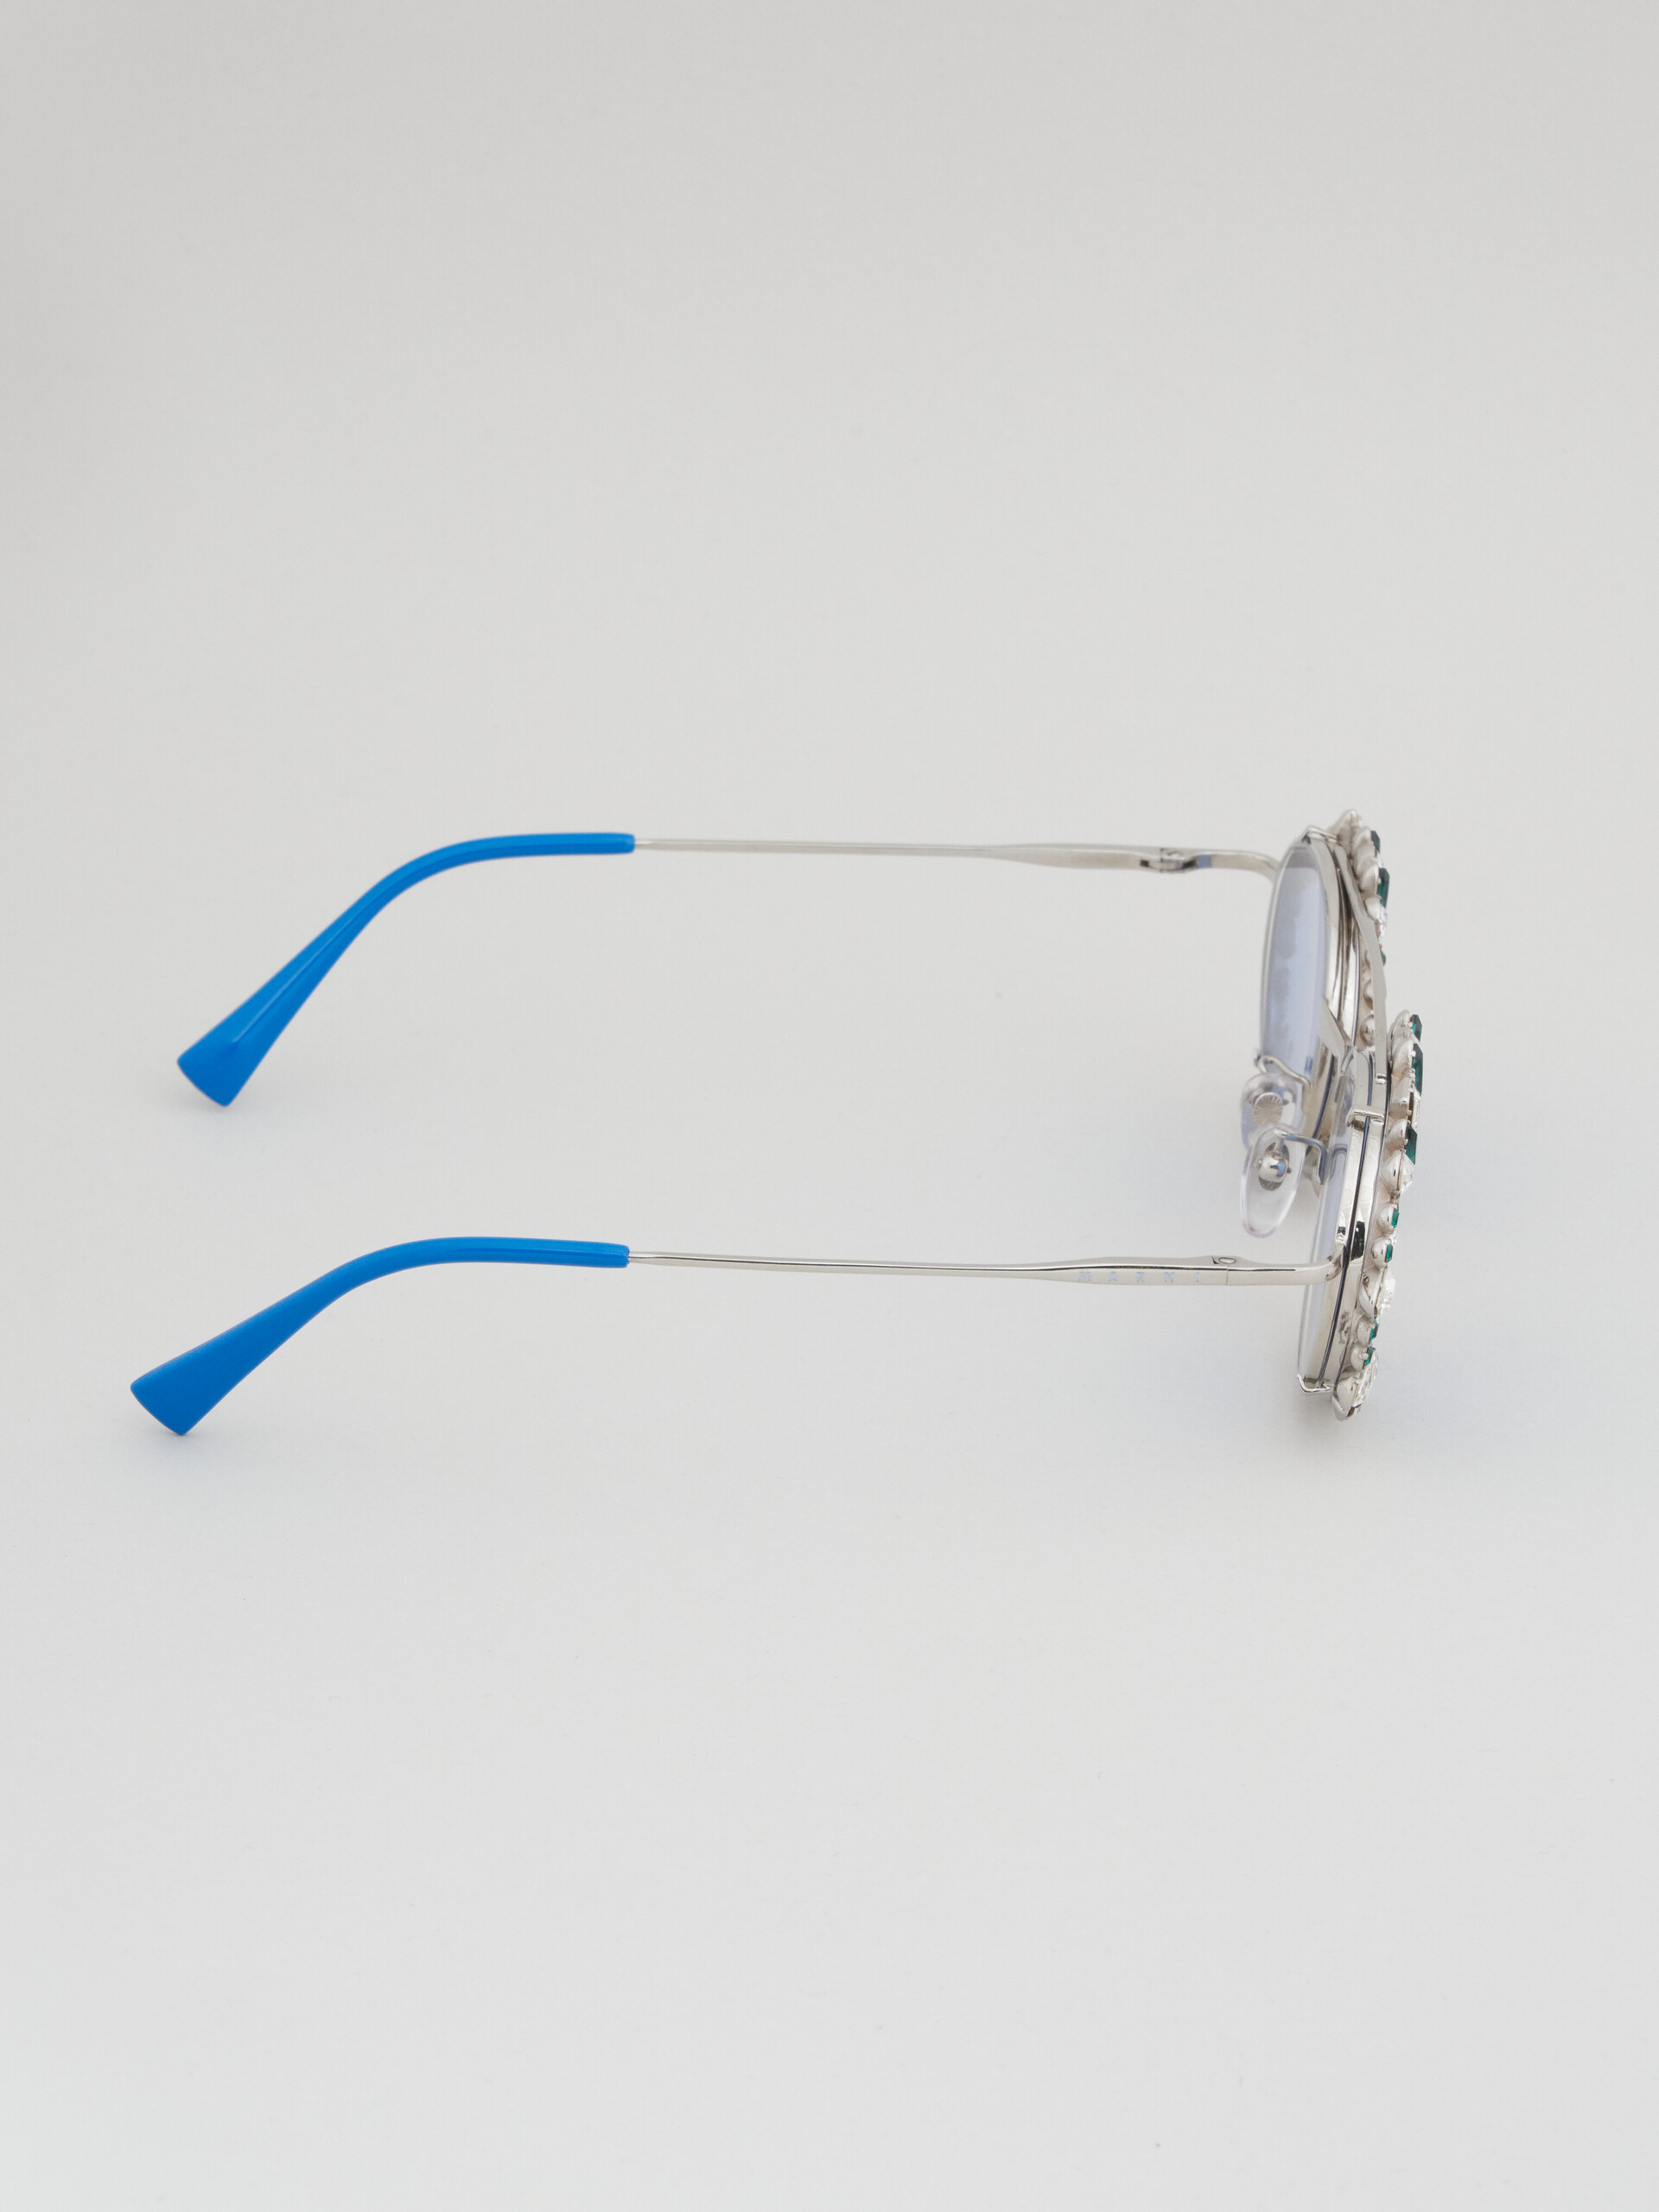 Silberne WAITOMO CAVES Brille - Optisch - Image 3